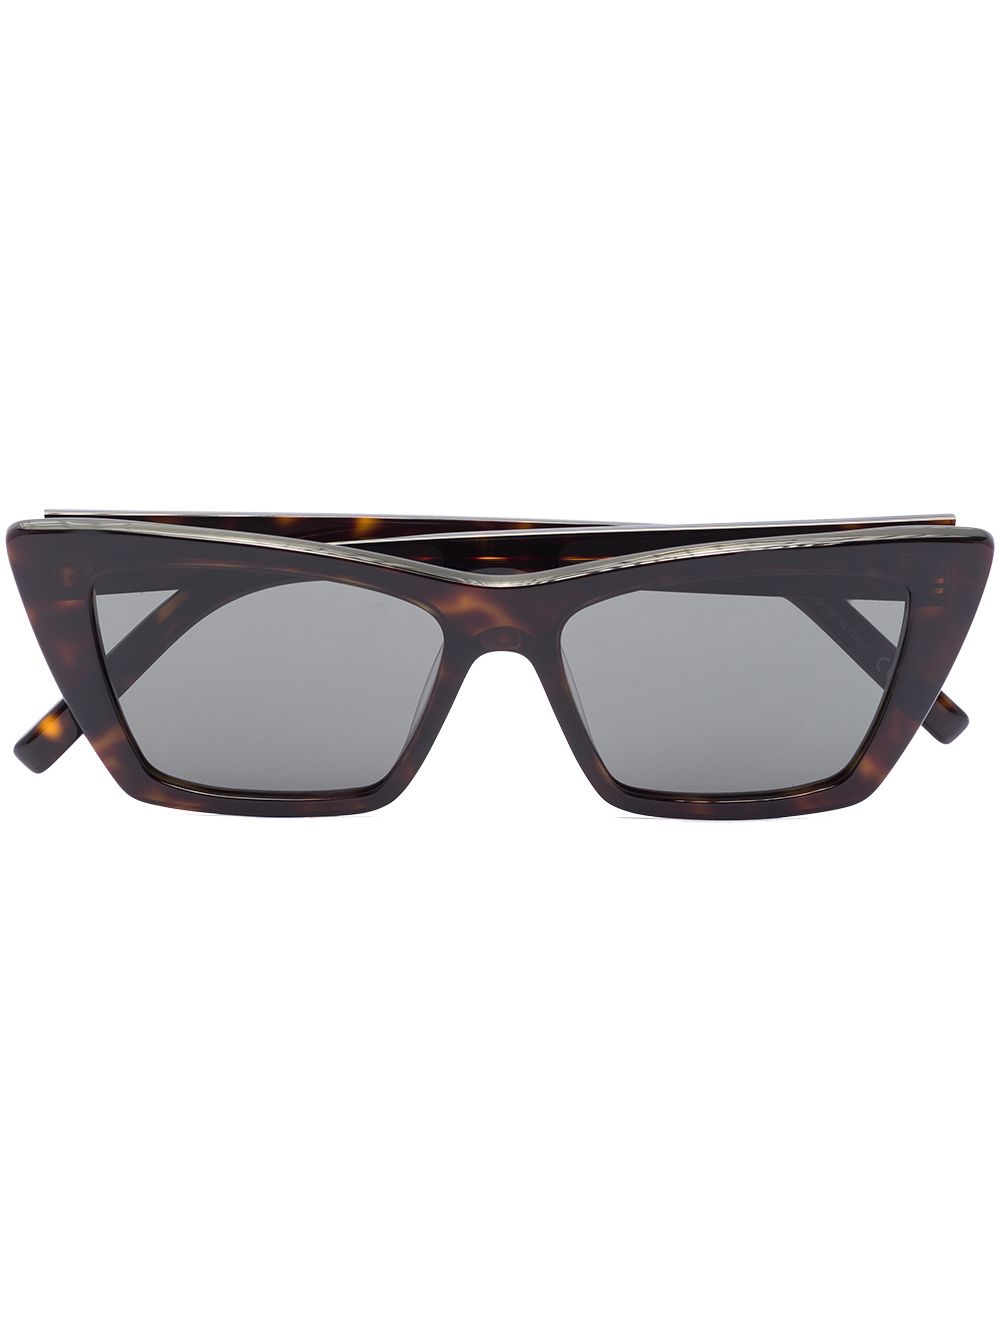 SL 276 rectangular-frame sunglasses